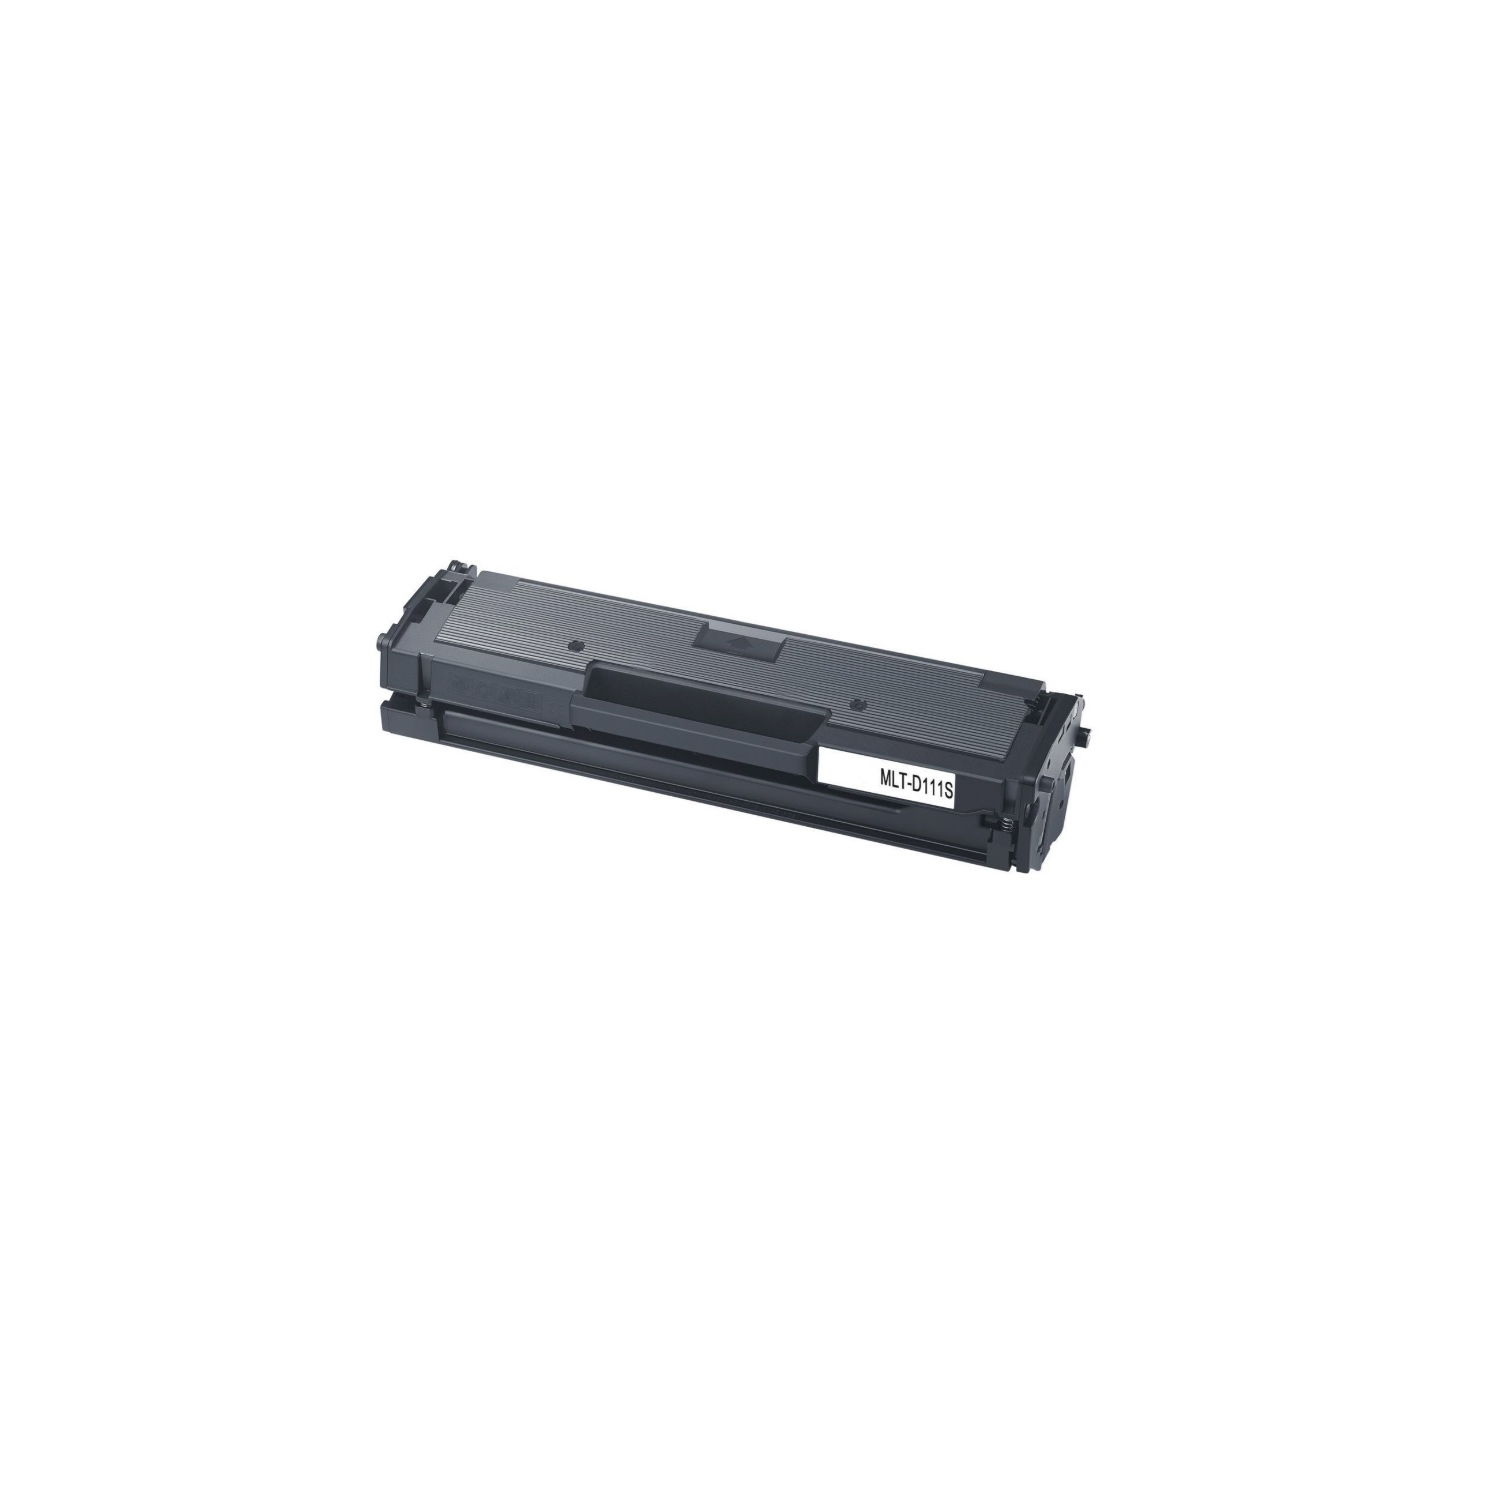 CC Premium Compatible Samsung MLT-D111S Black Toner Cartridge for Xpress SL-M2020W/M2022/M2022W/M2070/M2070FW/M2070W